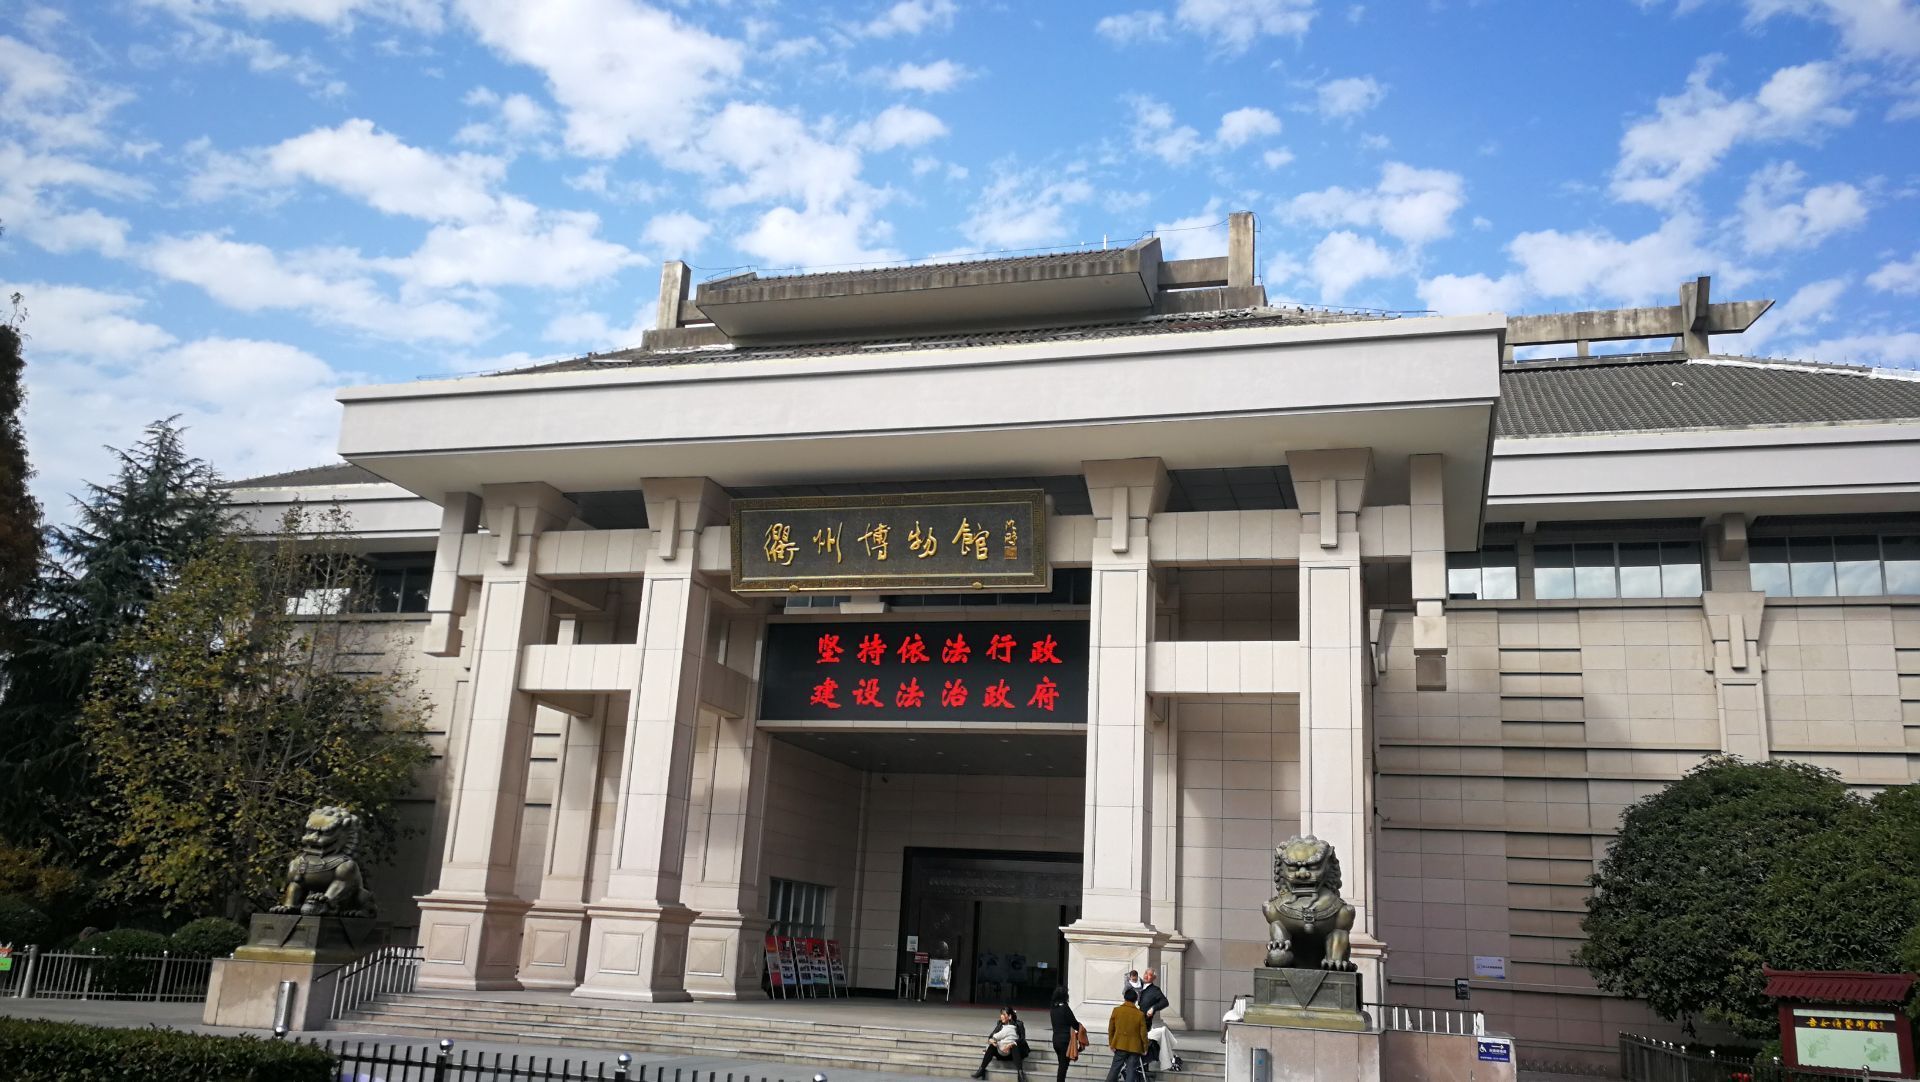 边上是衢州孔庙,是衢州市一家反映衢州历史文化的综合性博物馆,是个